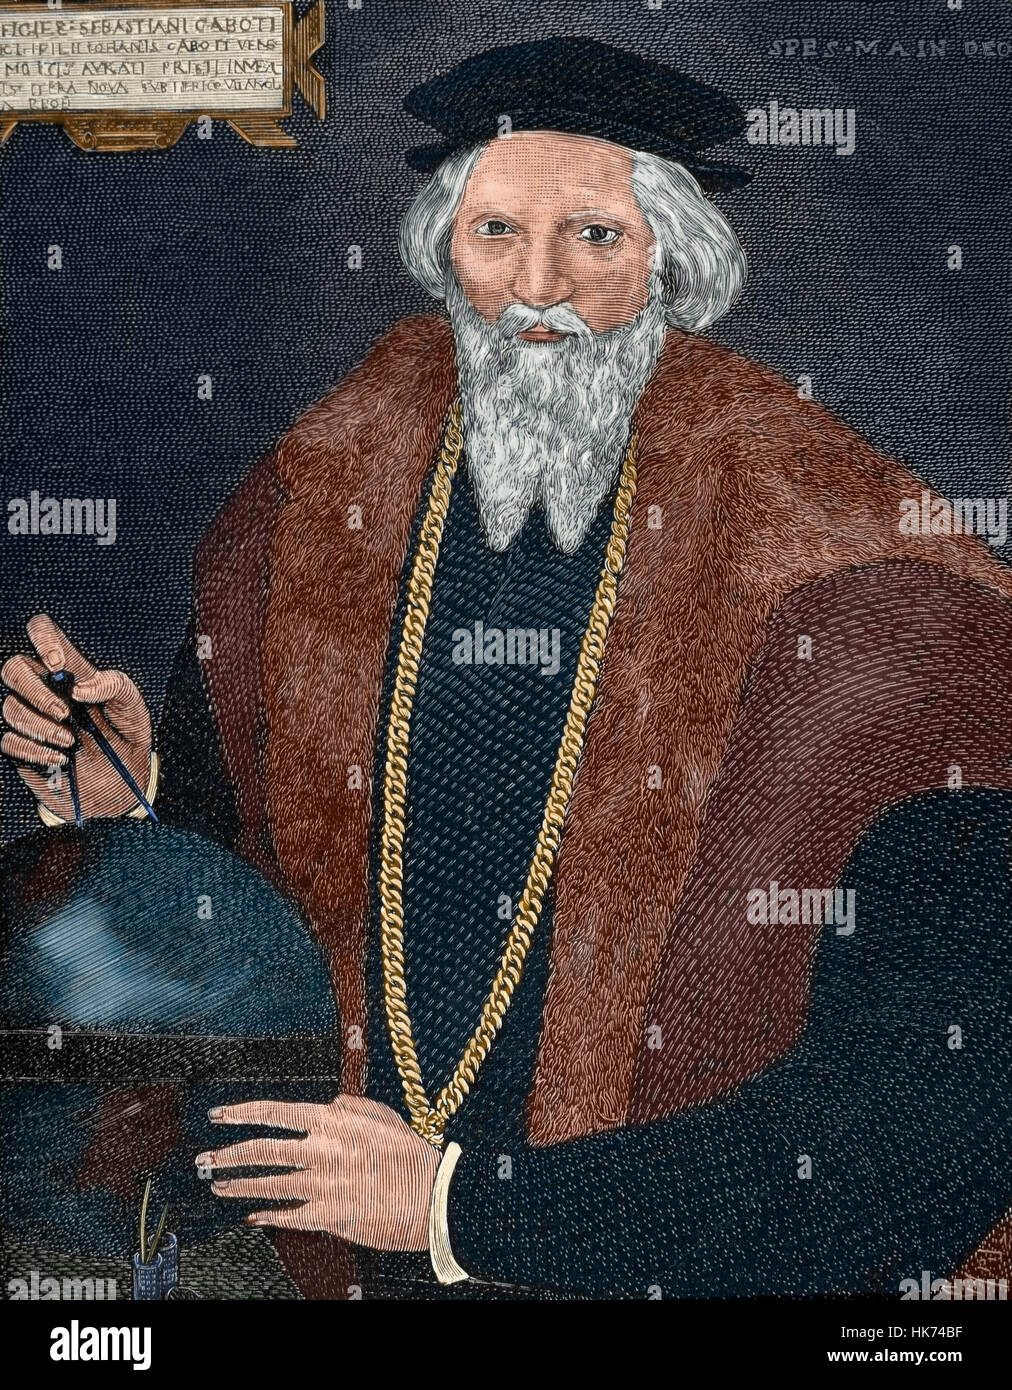 Sébastien Cabot (ch. 1474-c. 1557). L'explorateur italien. Portrait. Gravure de Capuz. De couleur. Banque D'Images